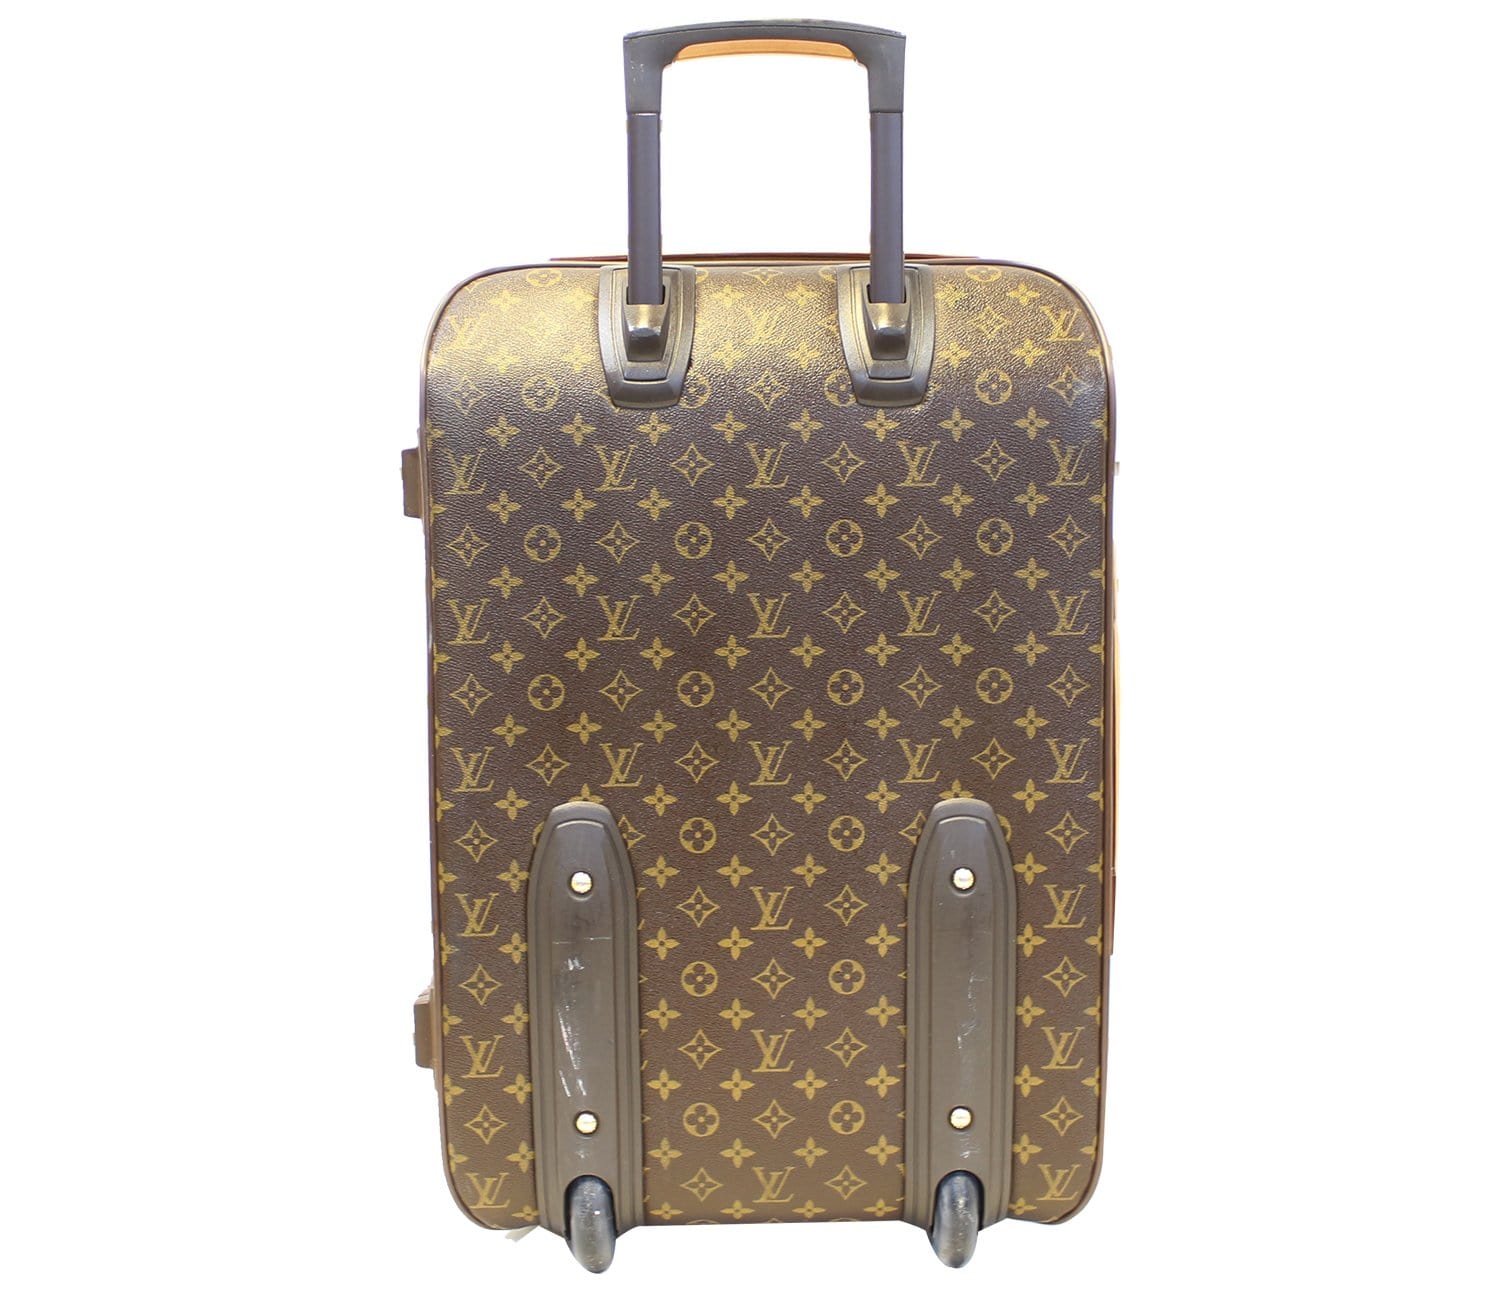 LOUIS VUITTON Pegase 55 Monogram Canvas Business Suitcase Travel